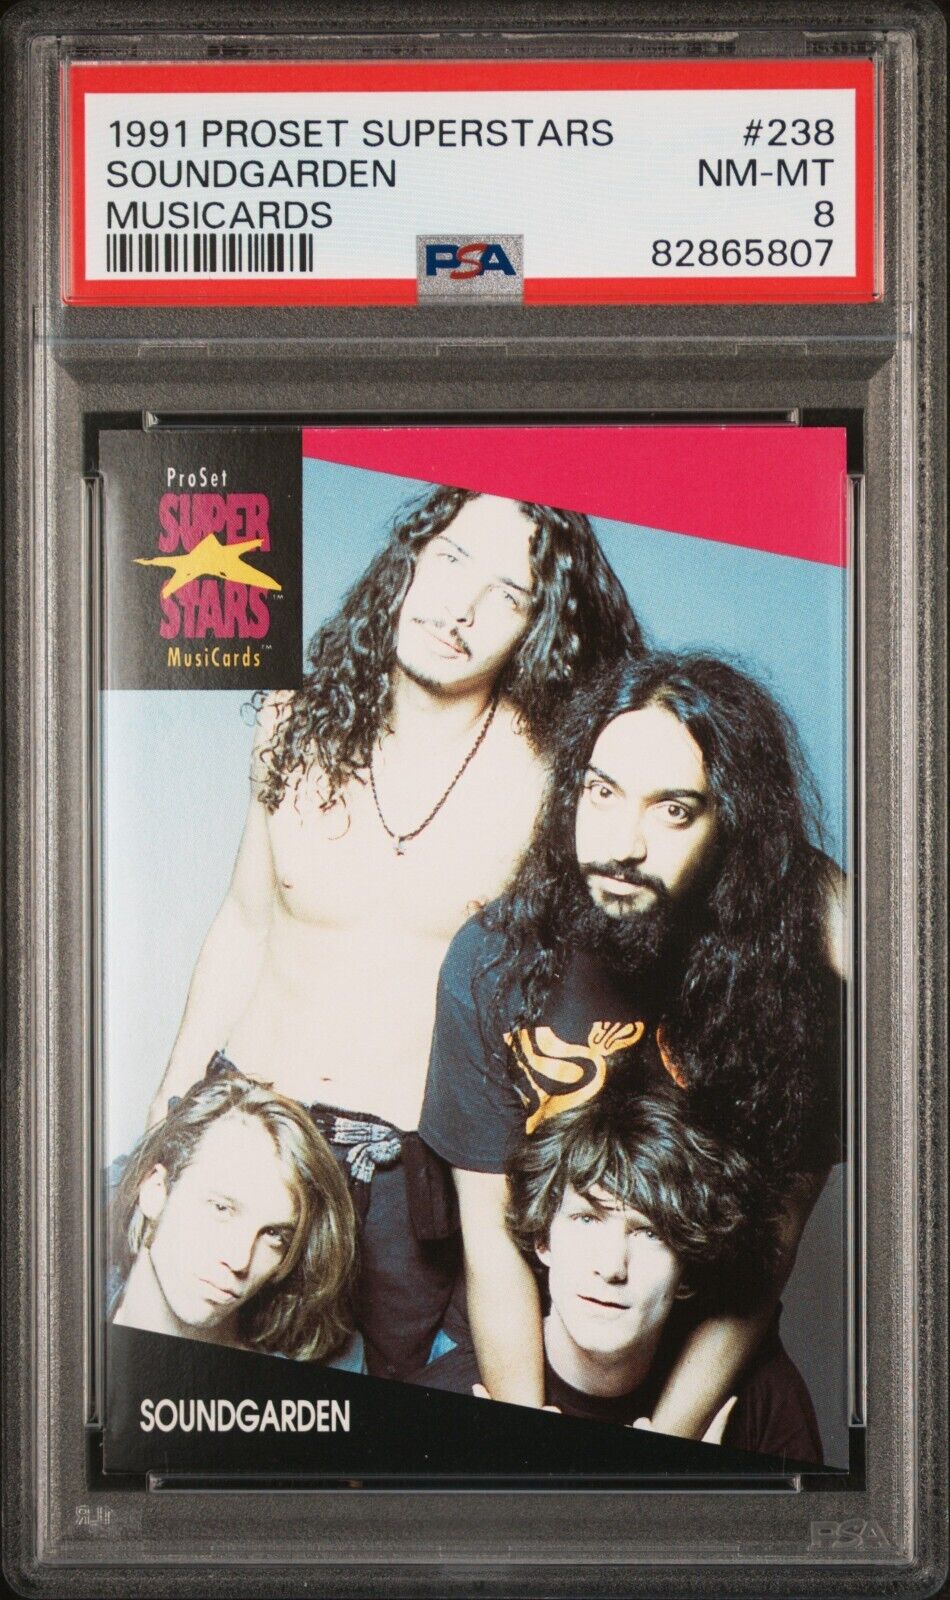 1991 Proset Superstars Soundgarden Musicards PSA 8 NM-MT Card #238 Chris Cornell